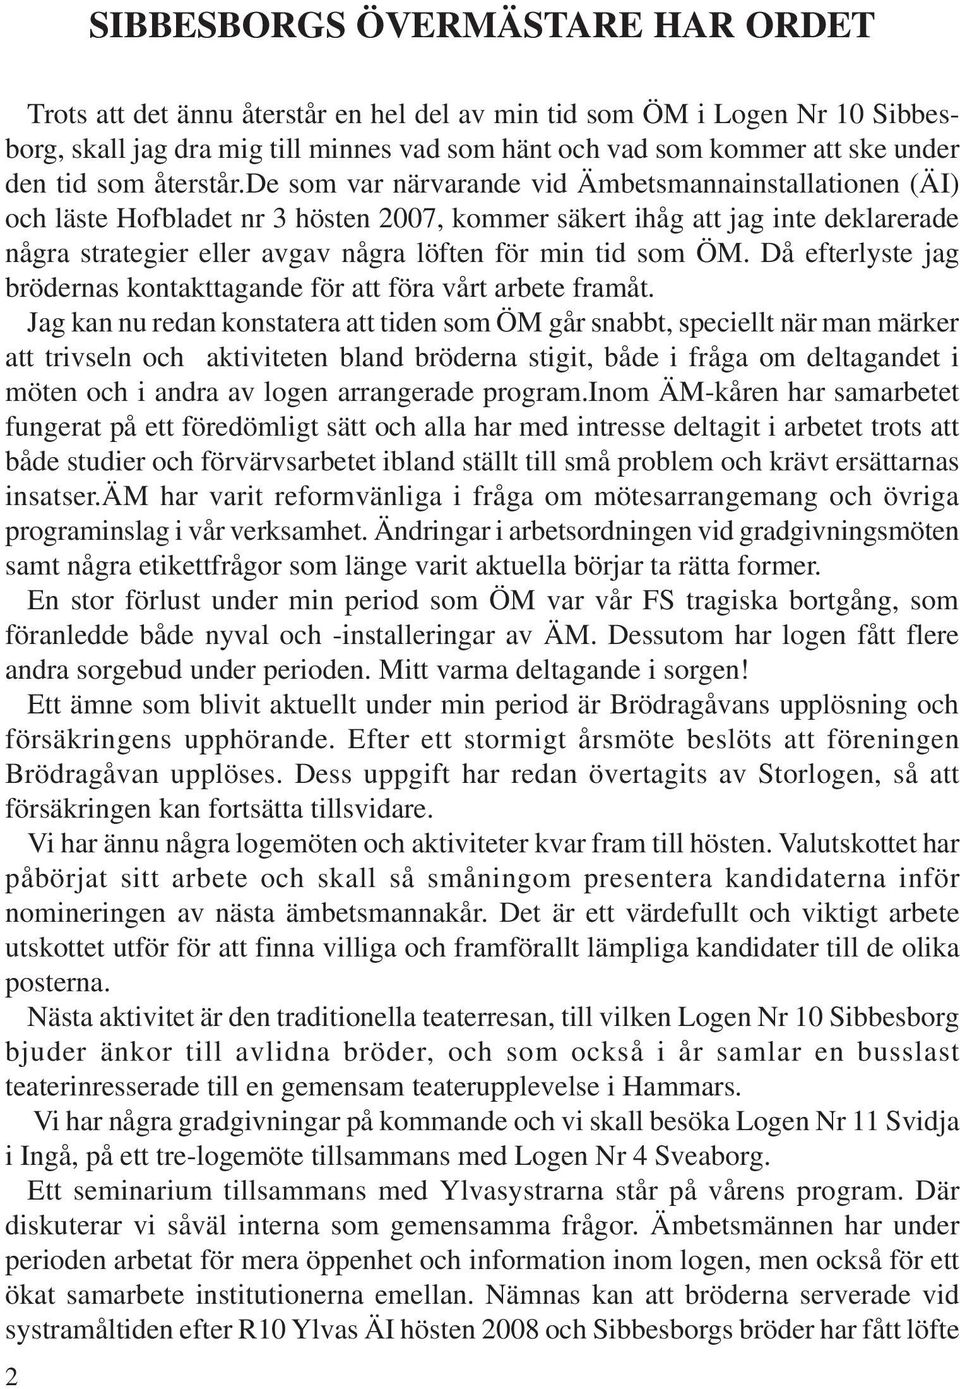 de som var närvarande vid Ämbetsmannainstallationen (ÄI) och läste Hofbladet nr 3 hösten 2007, kommer säkert ihåg att jag inte deklarerade några strategier eller avgav några löften för min tid som ÖM.